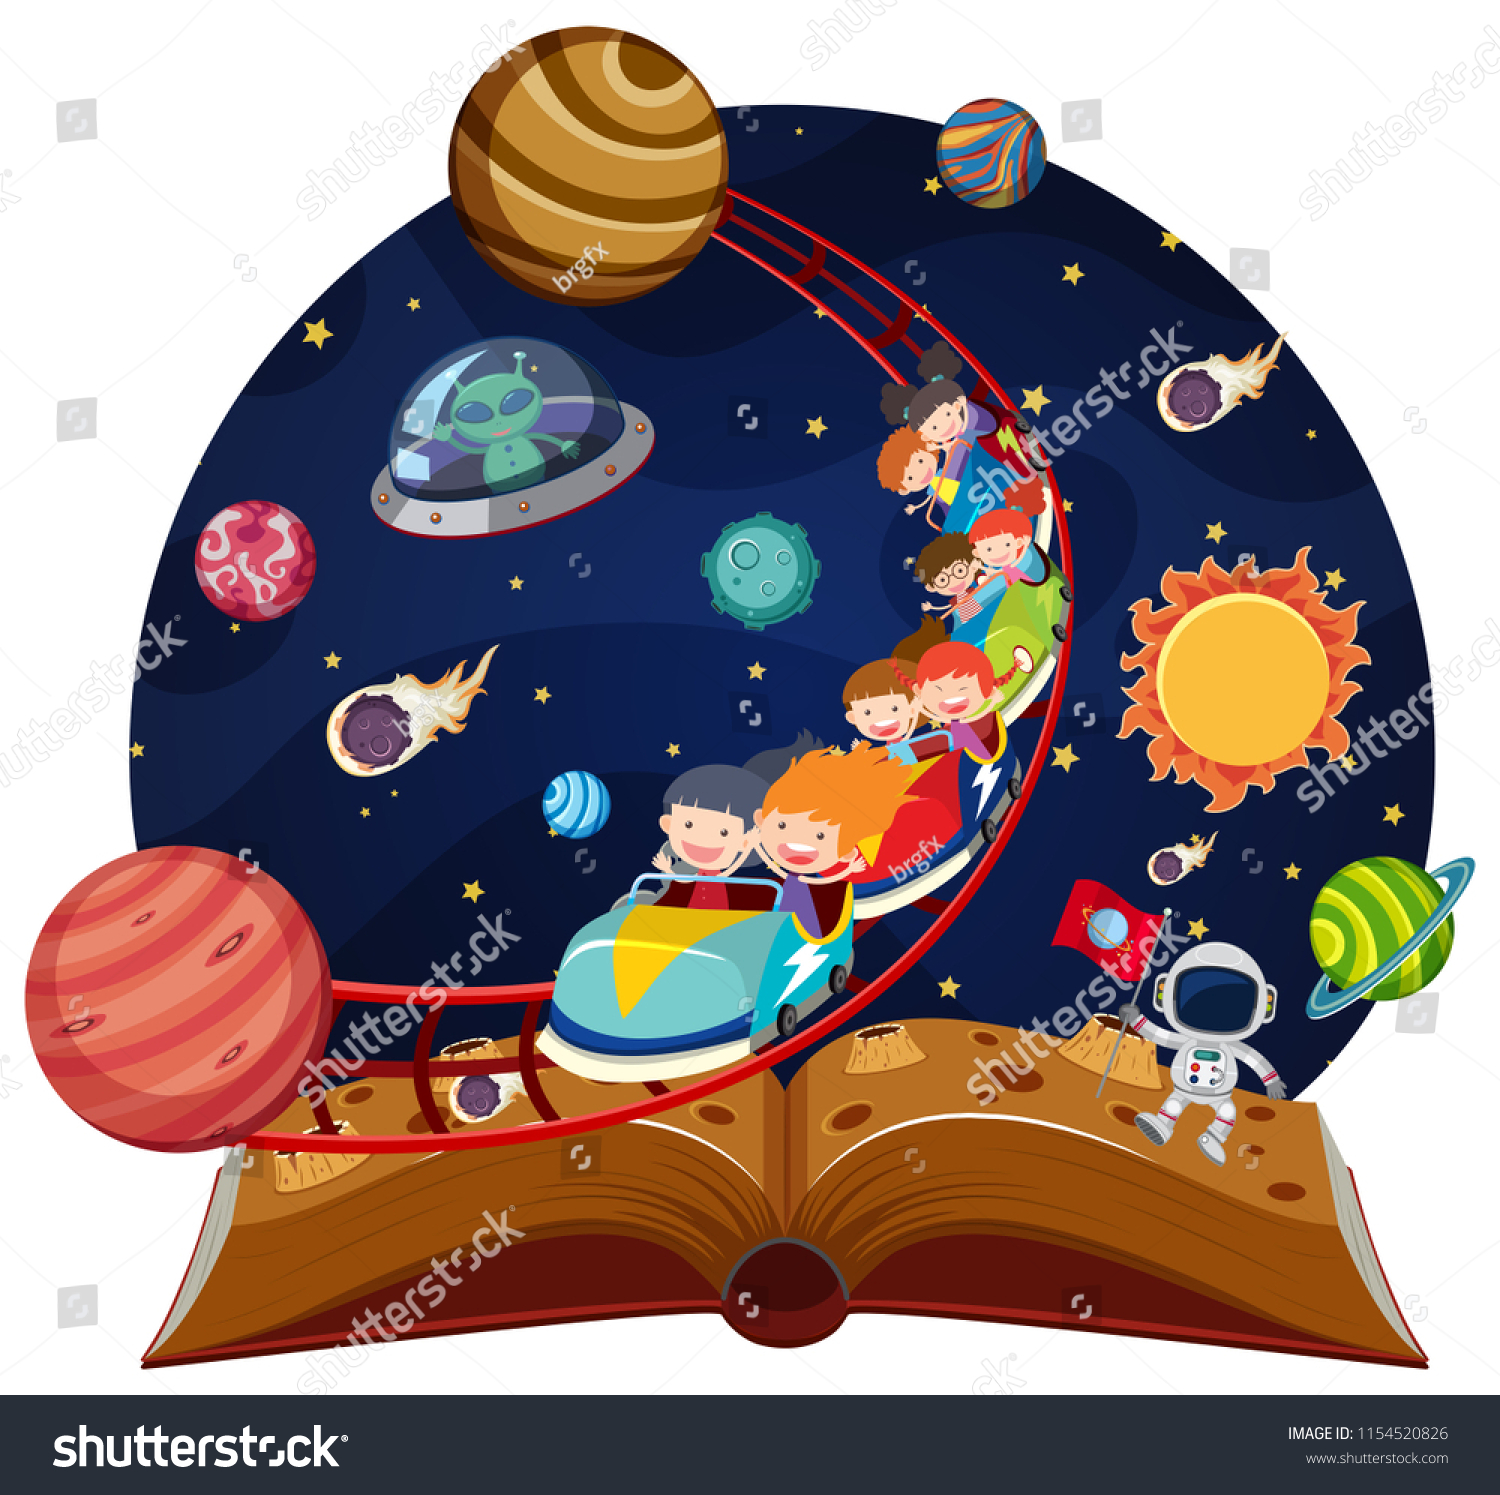 Иллюстрация к детской книге про космос